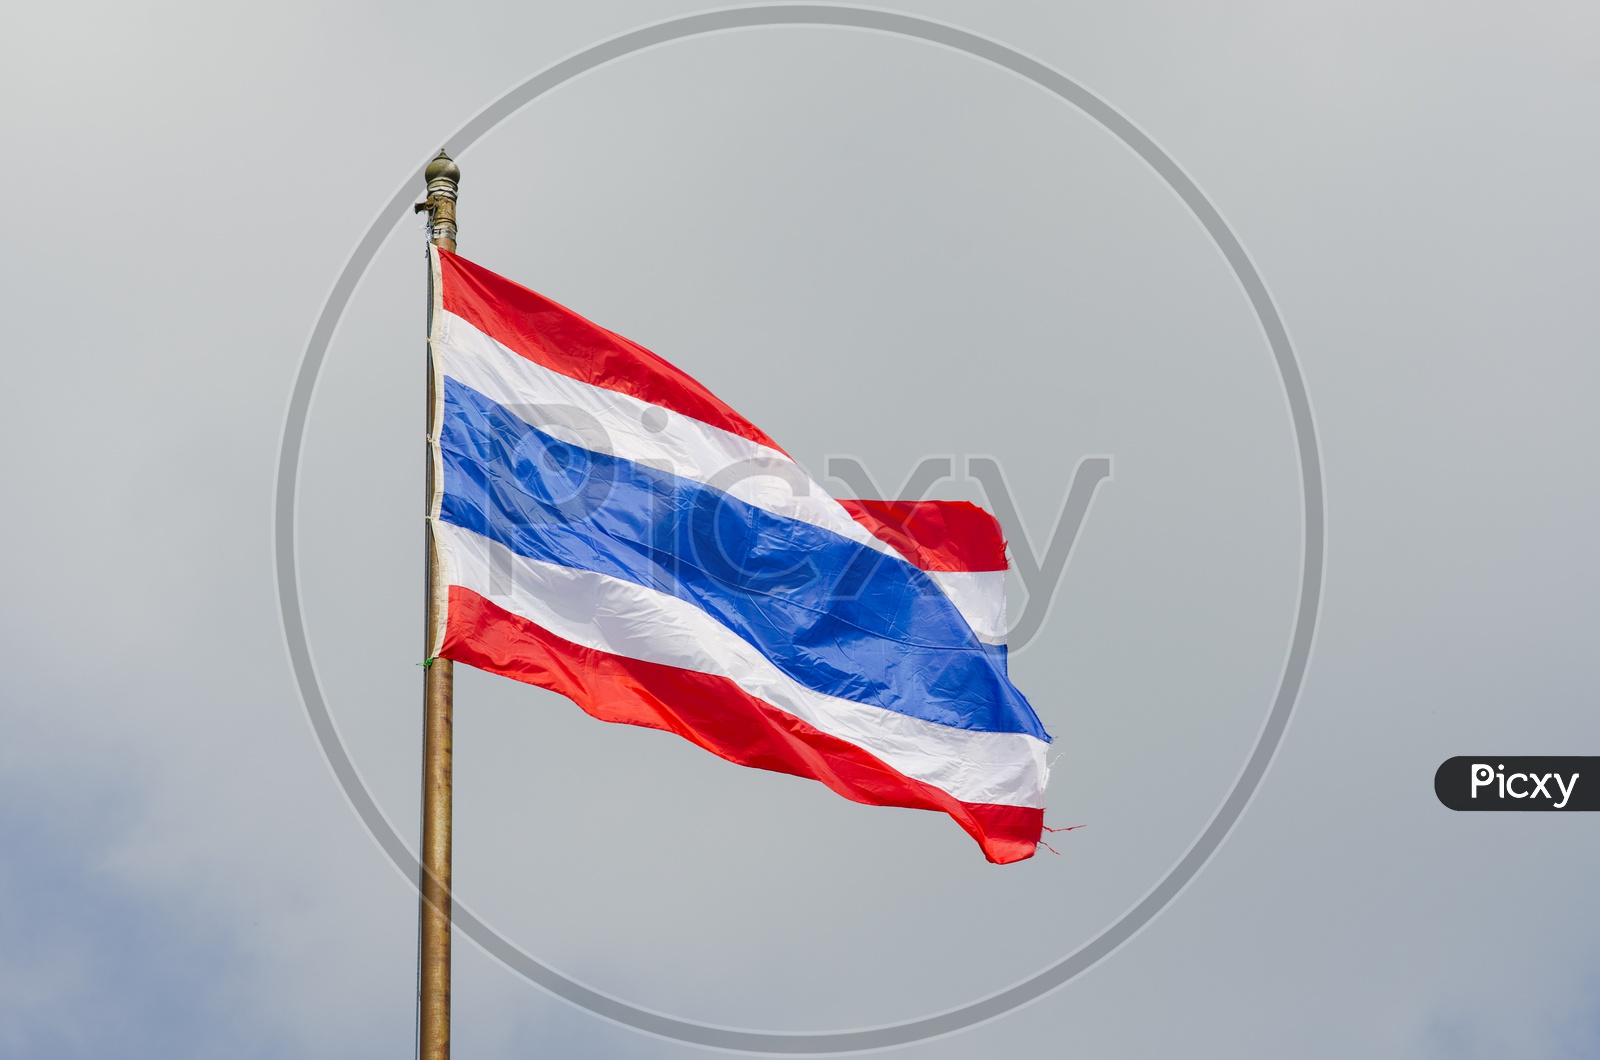 Thai Flag Waving On a Flag Pole Over Sky Background